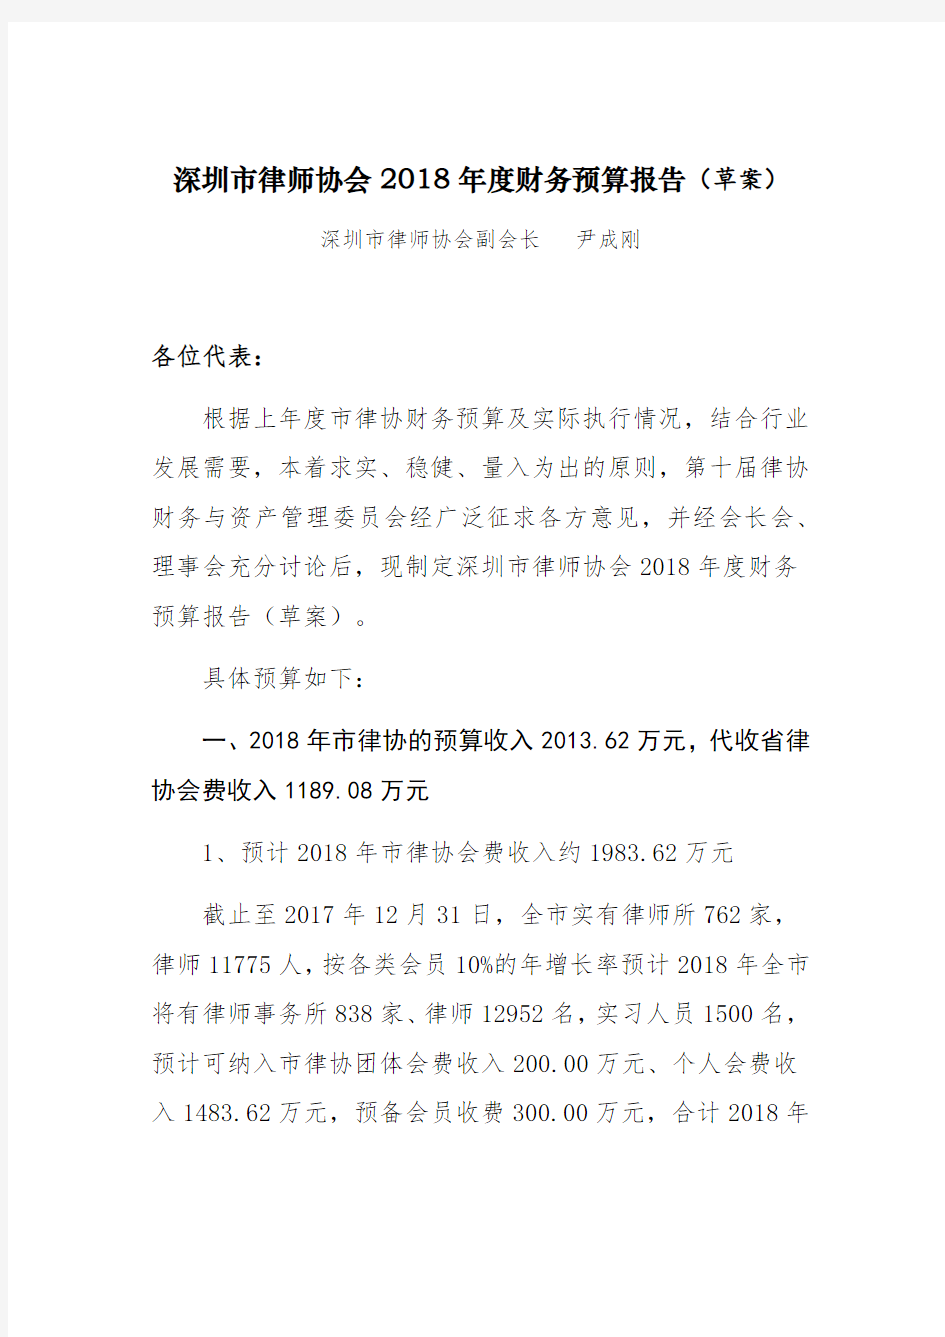 深圳律师协会2018财务预算报告草案